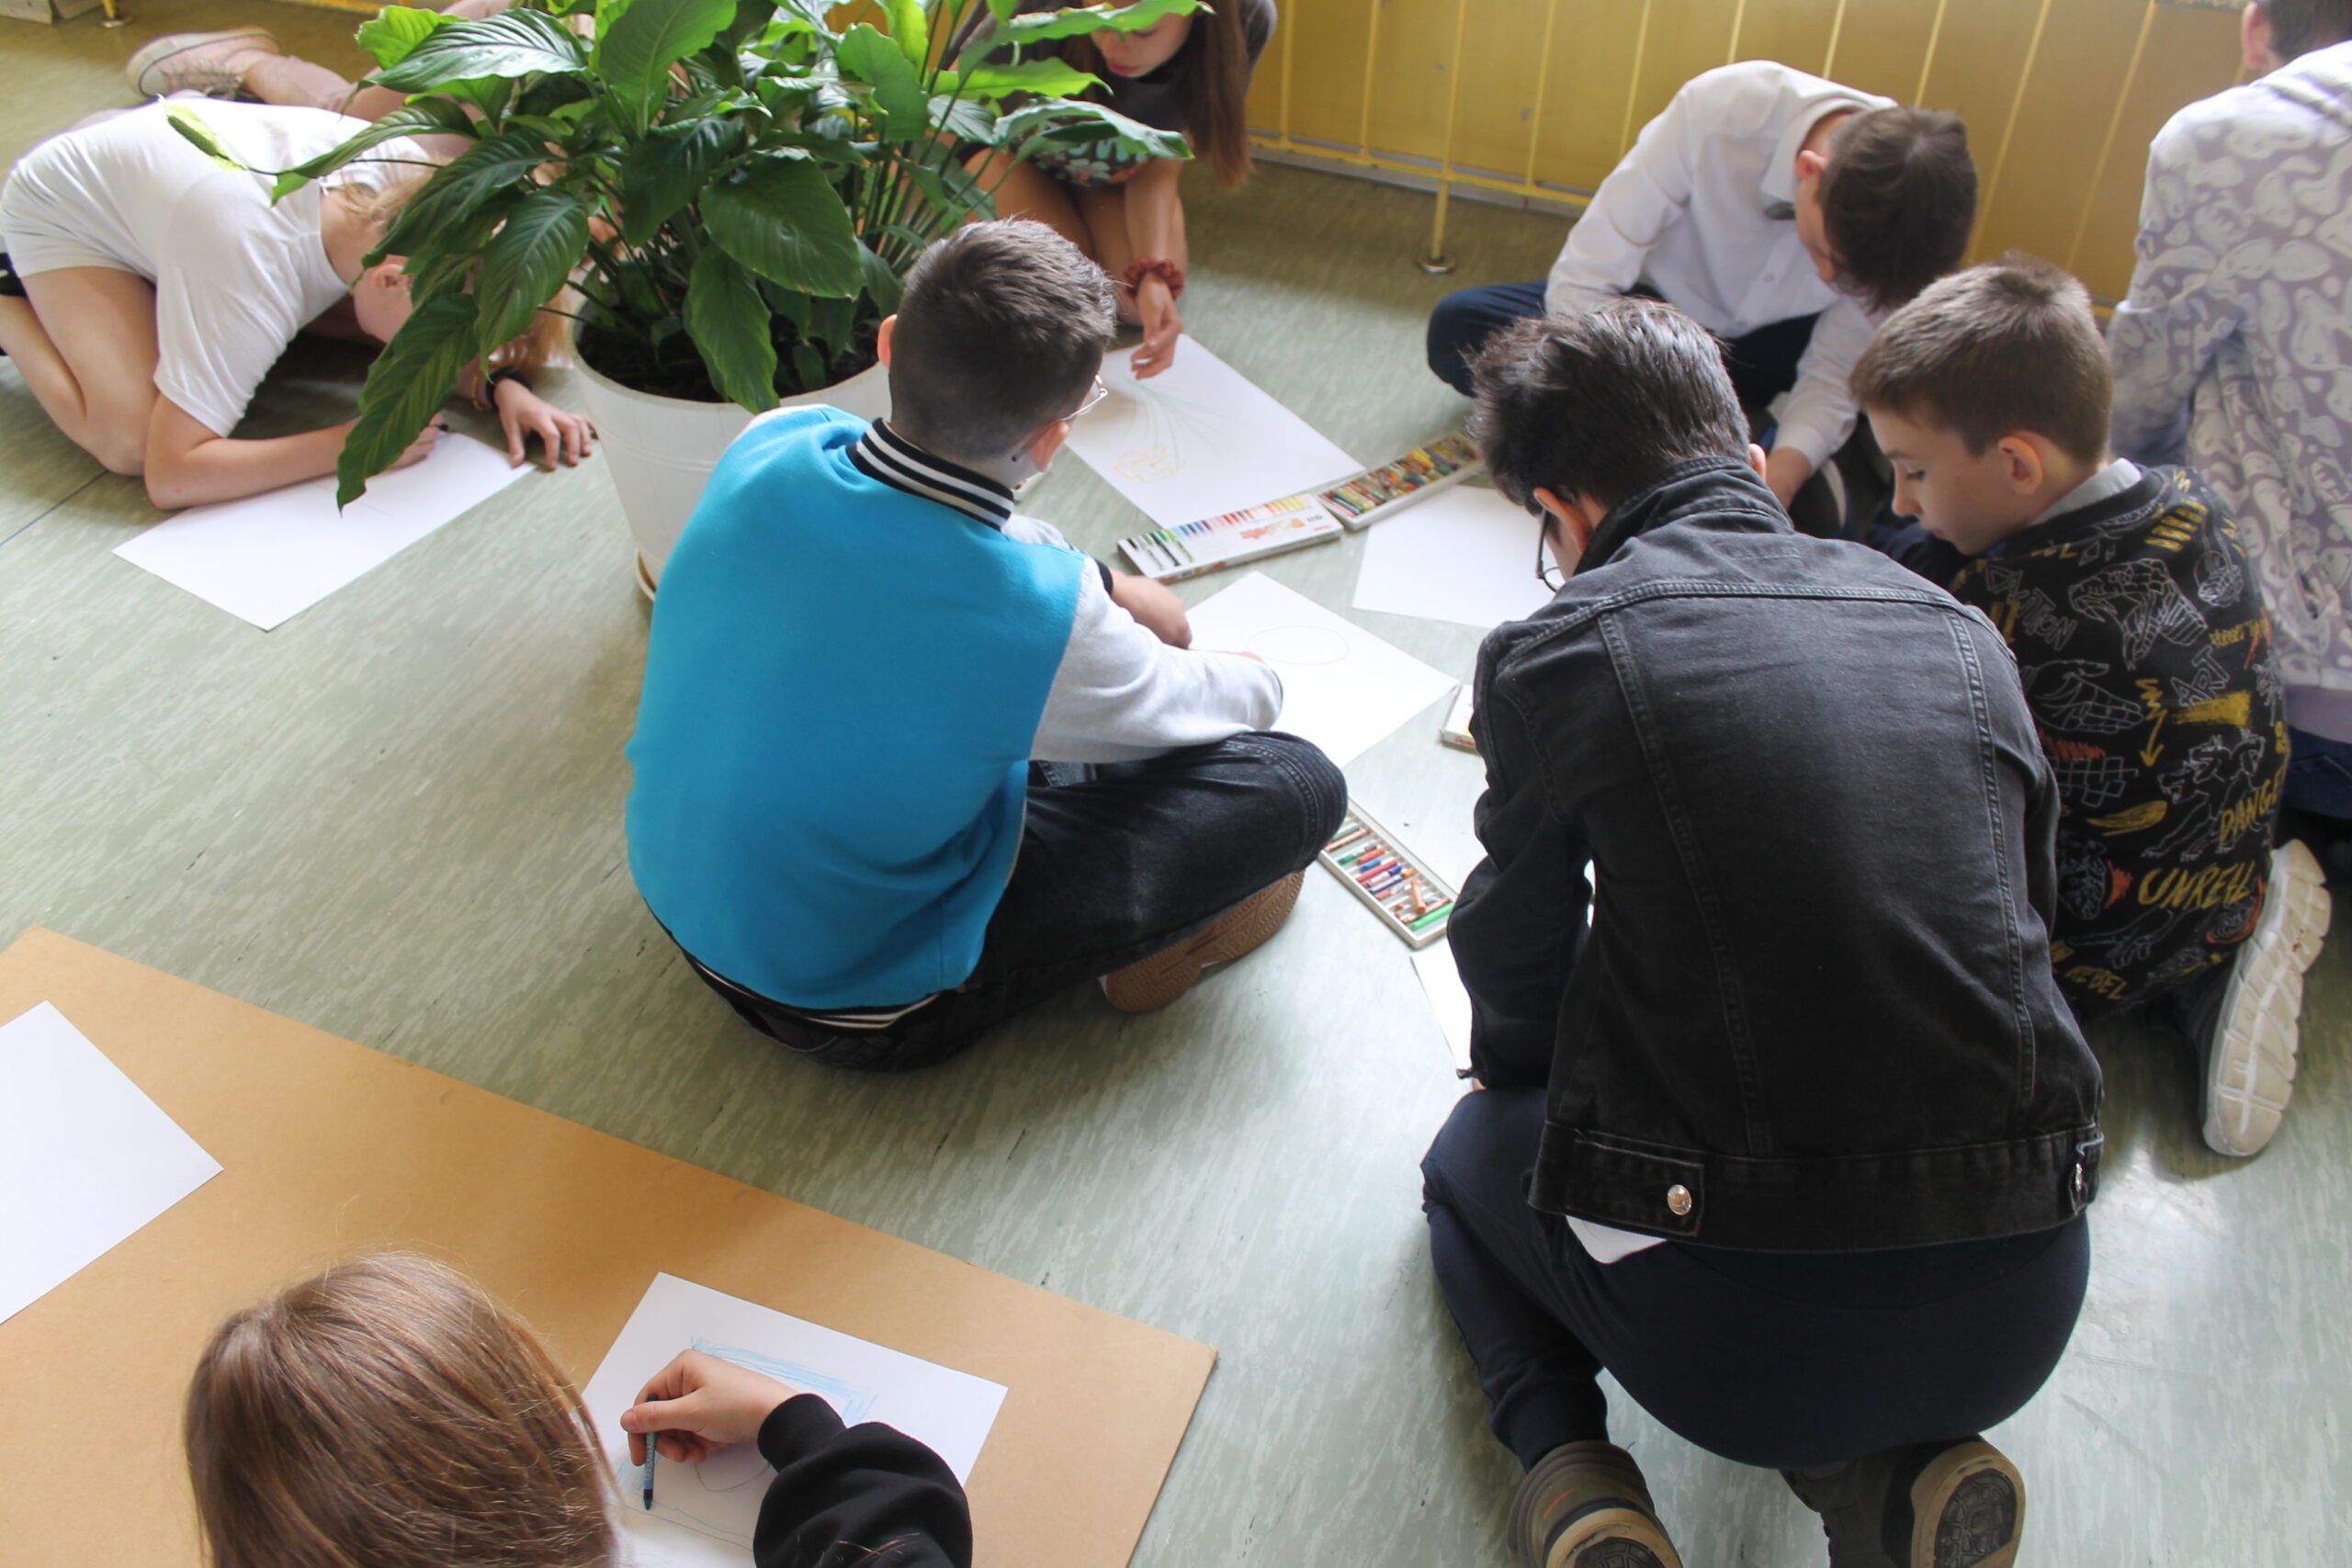 Święto Szkoły maj 2023. Uczniowie po uroczystej akademii biorą udział w zabawach na terenie szkoły - malowanie na kartonach